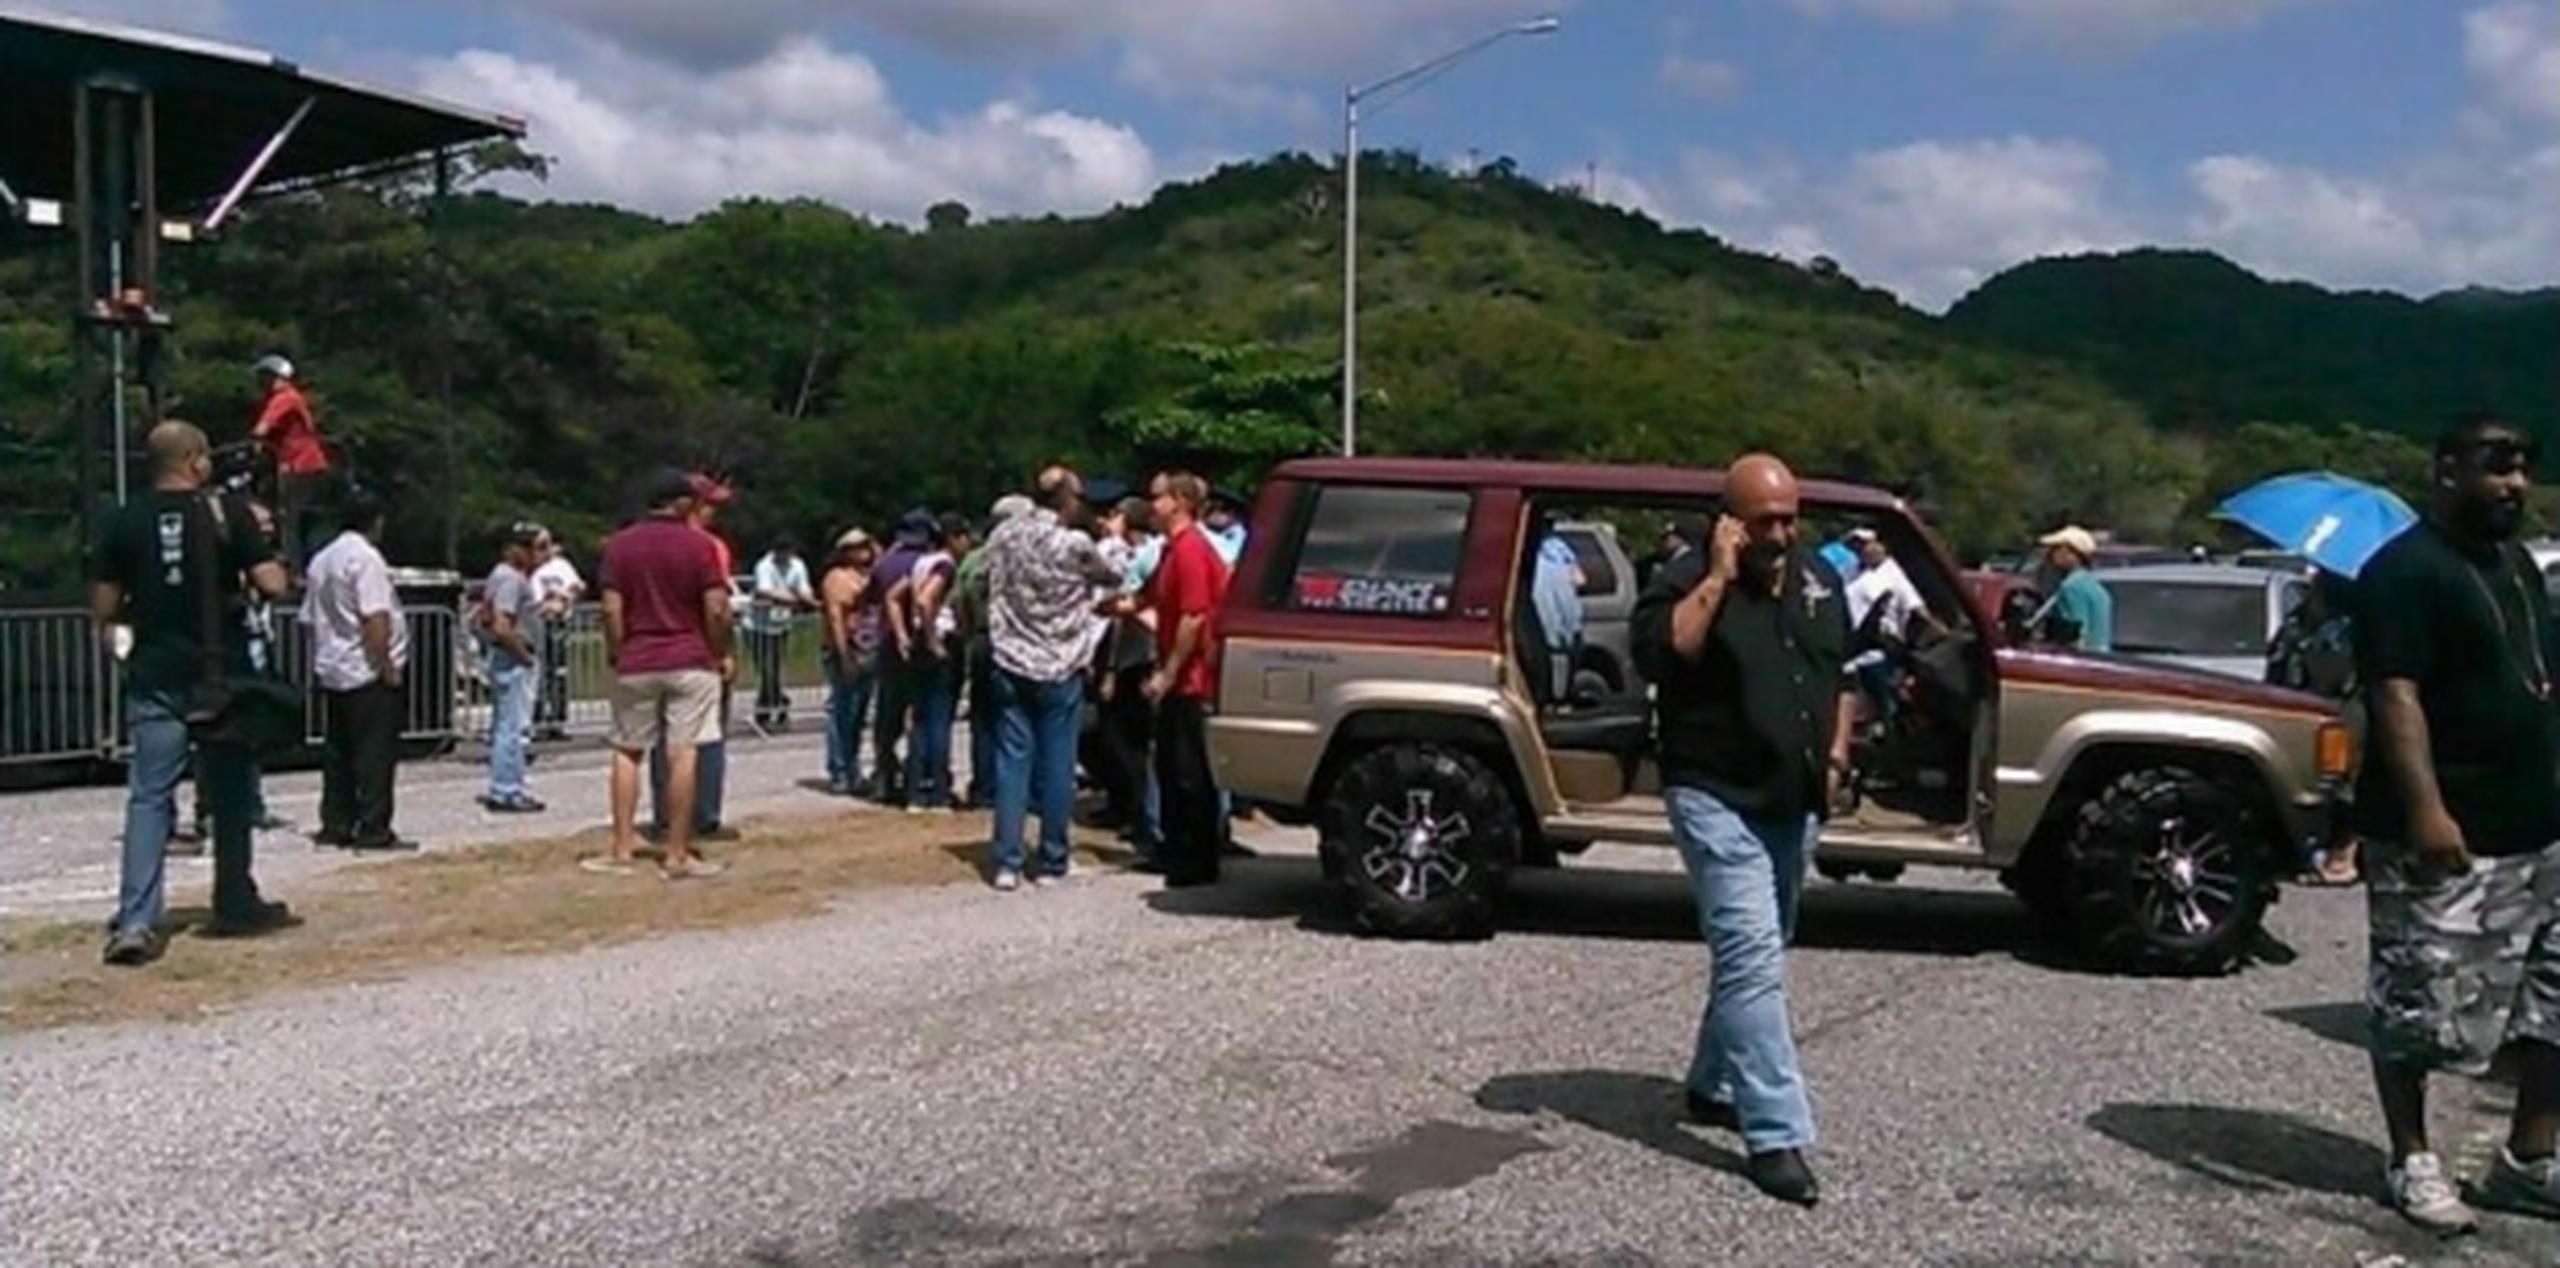 Los manifestantes lograron detener el tránsito vehicular tanto en dirección a Ponce como hacia Adjuntas. (Suministrada)